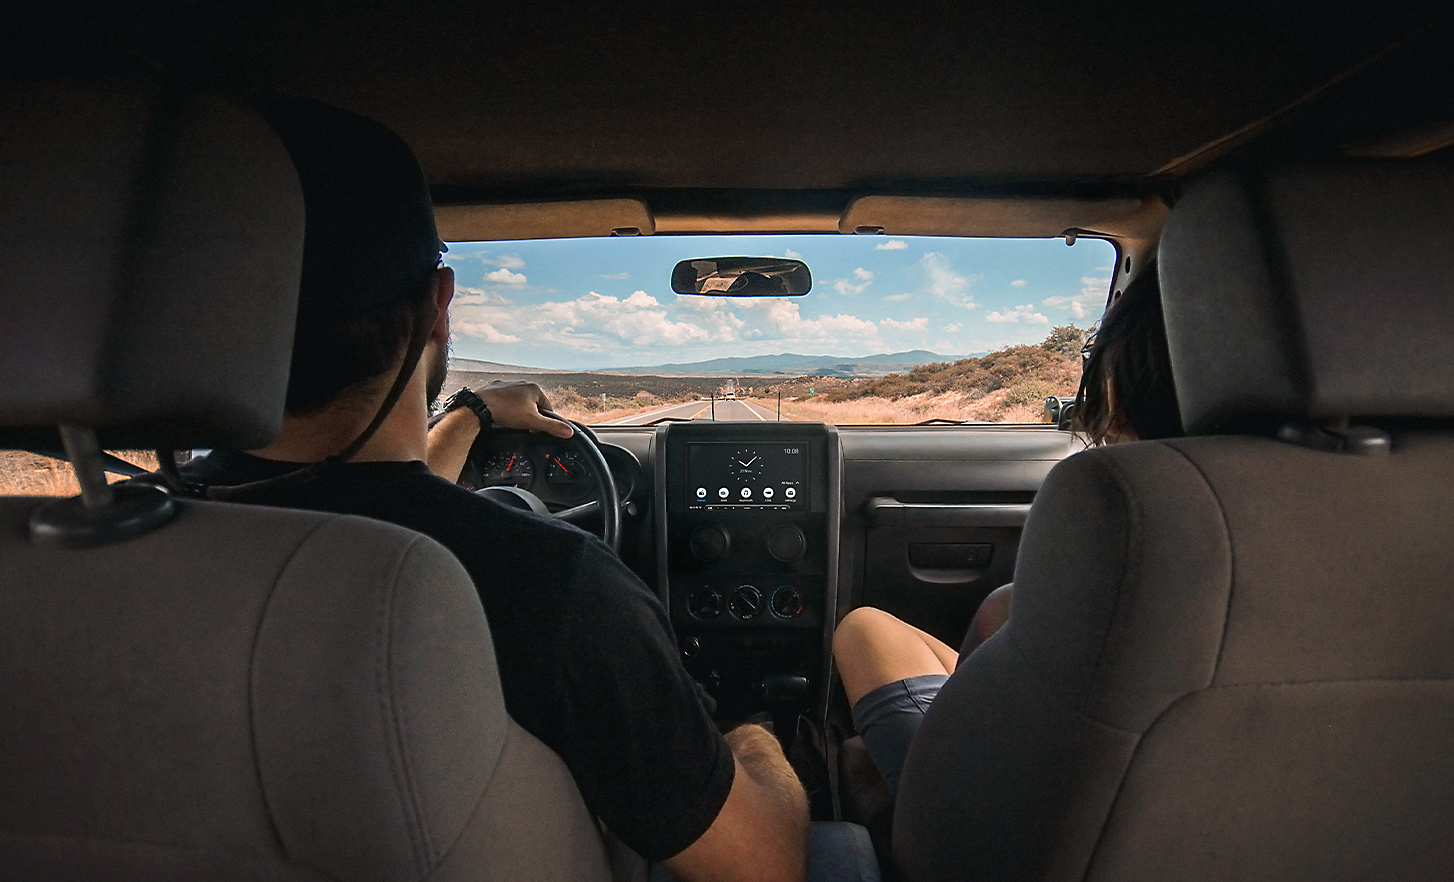 Εικόνα δύο ατόμων που οδηγούν σε περιβάλλον που μοιάζει με έρημο, με το XAV-AX6050 στο ταμπλό